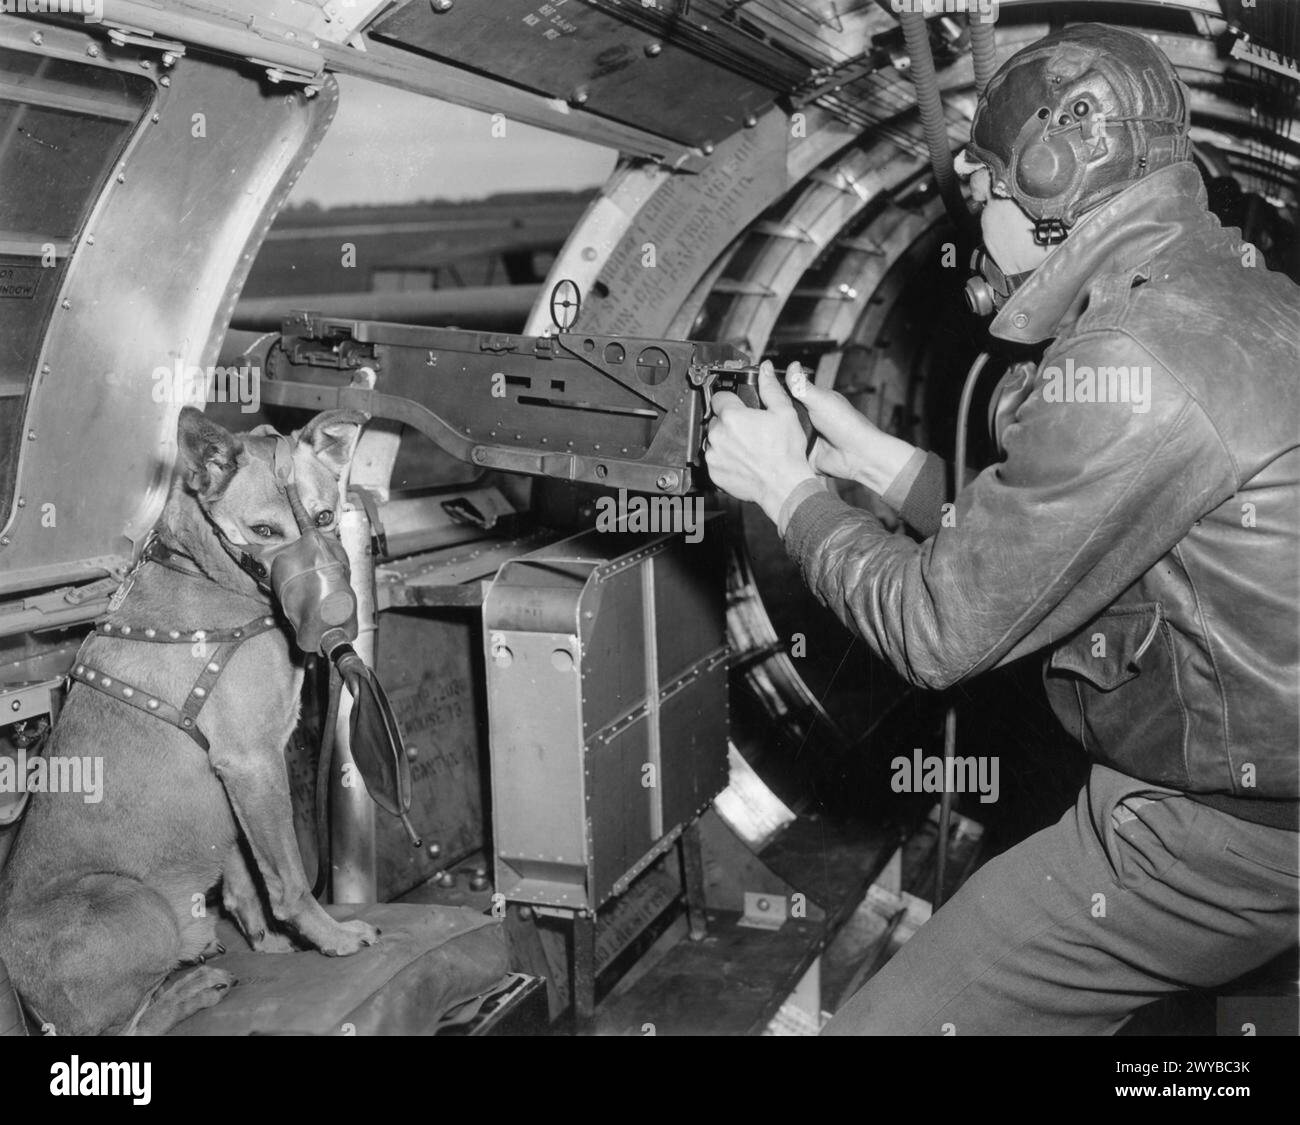 UNITED STATES ARMY AIR FORCES (USAAF) IN BRITAIN, 1942-1945 - il sergente Harold Rogers del 401st Bomb Group con la sua mascotte "Mister", nella posizione della pistola a vita di un B-17 Flying Fortress soprannominato "un Petit Peu".immagine stampata sul retro: "Passato per la pubblicazione 2 luglio 1943." [timbro] e "30195". [Censor no.]didascalia stampata sul retro: 'US ARMY OFFICIAL PHOTO. Questo cane "Mister" appartiene al sergente Harold Rogers, di Miami, Okla, nell'8th Air Force dell'esercito degli Stati Uniti. "Signore" è già stato in cinque missioni, compreso il raid su Huls, tedesco. Cavalca in coda all'aereo, una fortezza chiamata "un Petit Peu". Foto Stock